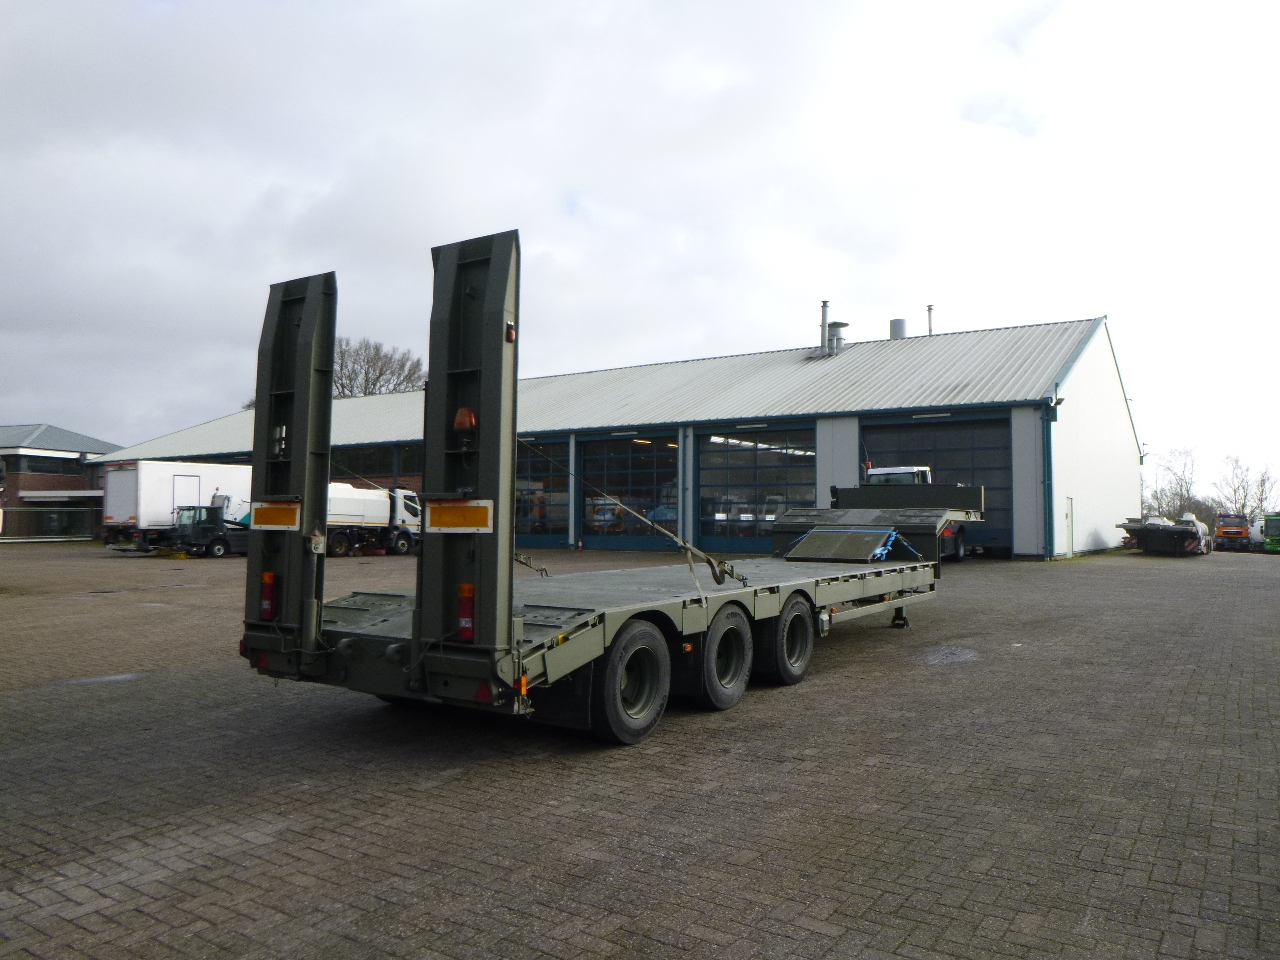 عربة مسطحة منخفضة نصف مقطورة Broshuis 3-axle semi-lowbed trailer E-2130 / 73 t + ramps: صور 3